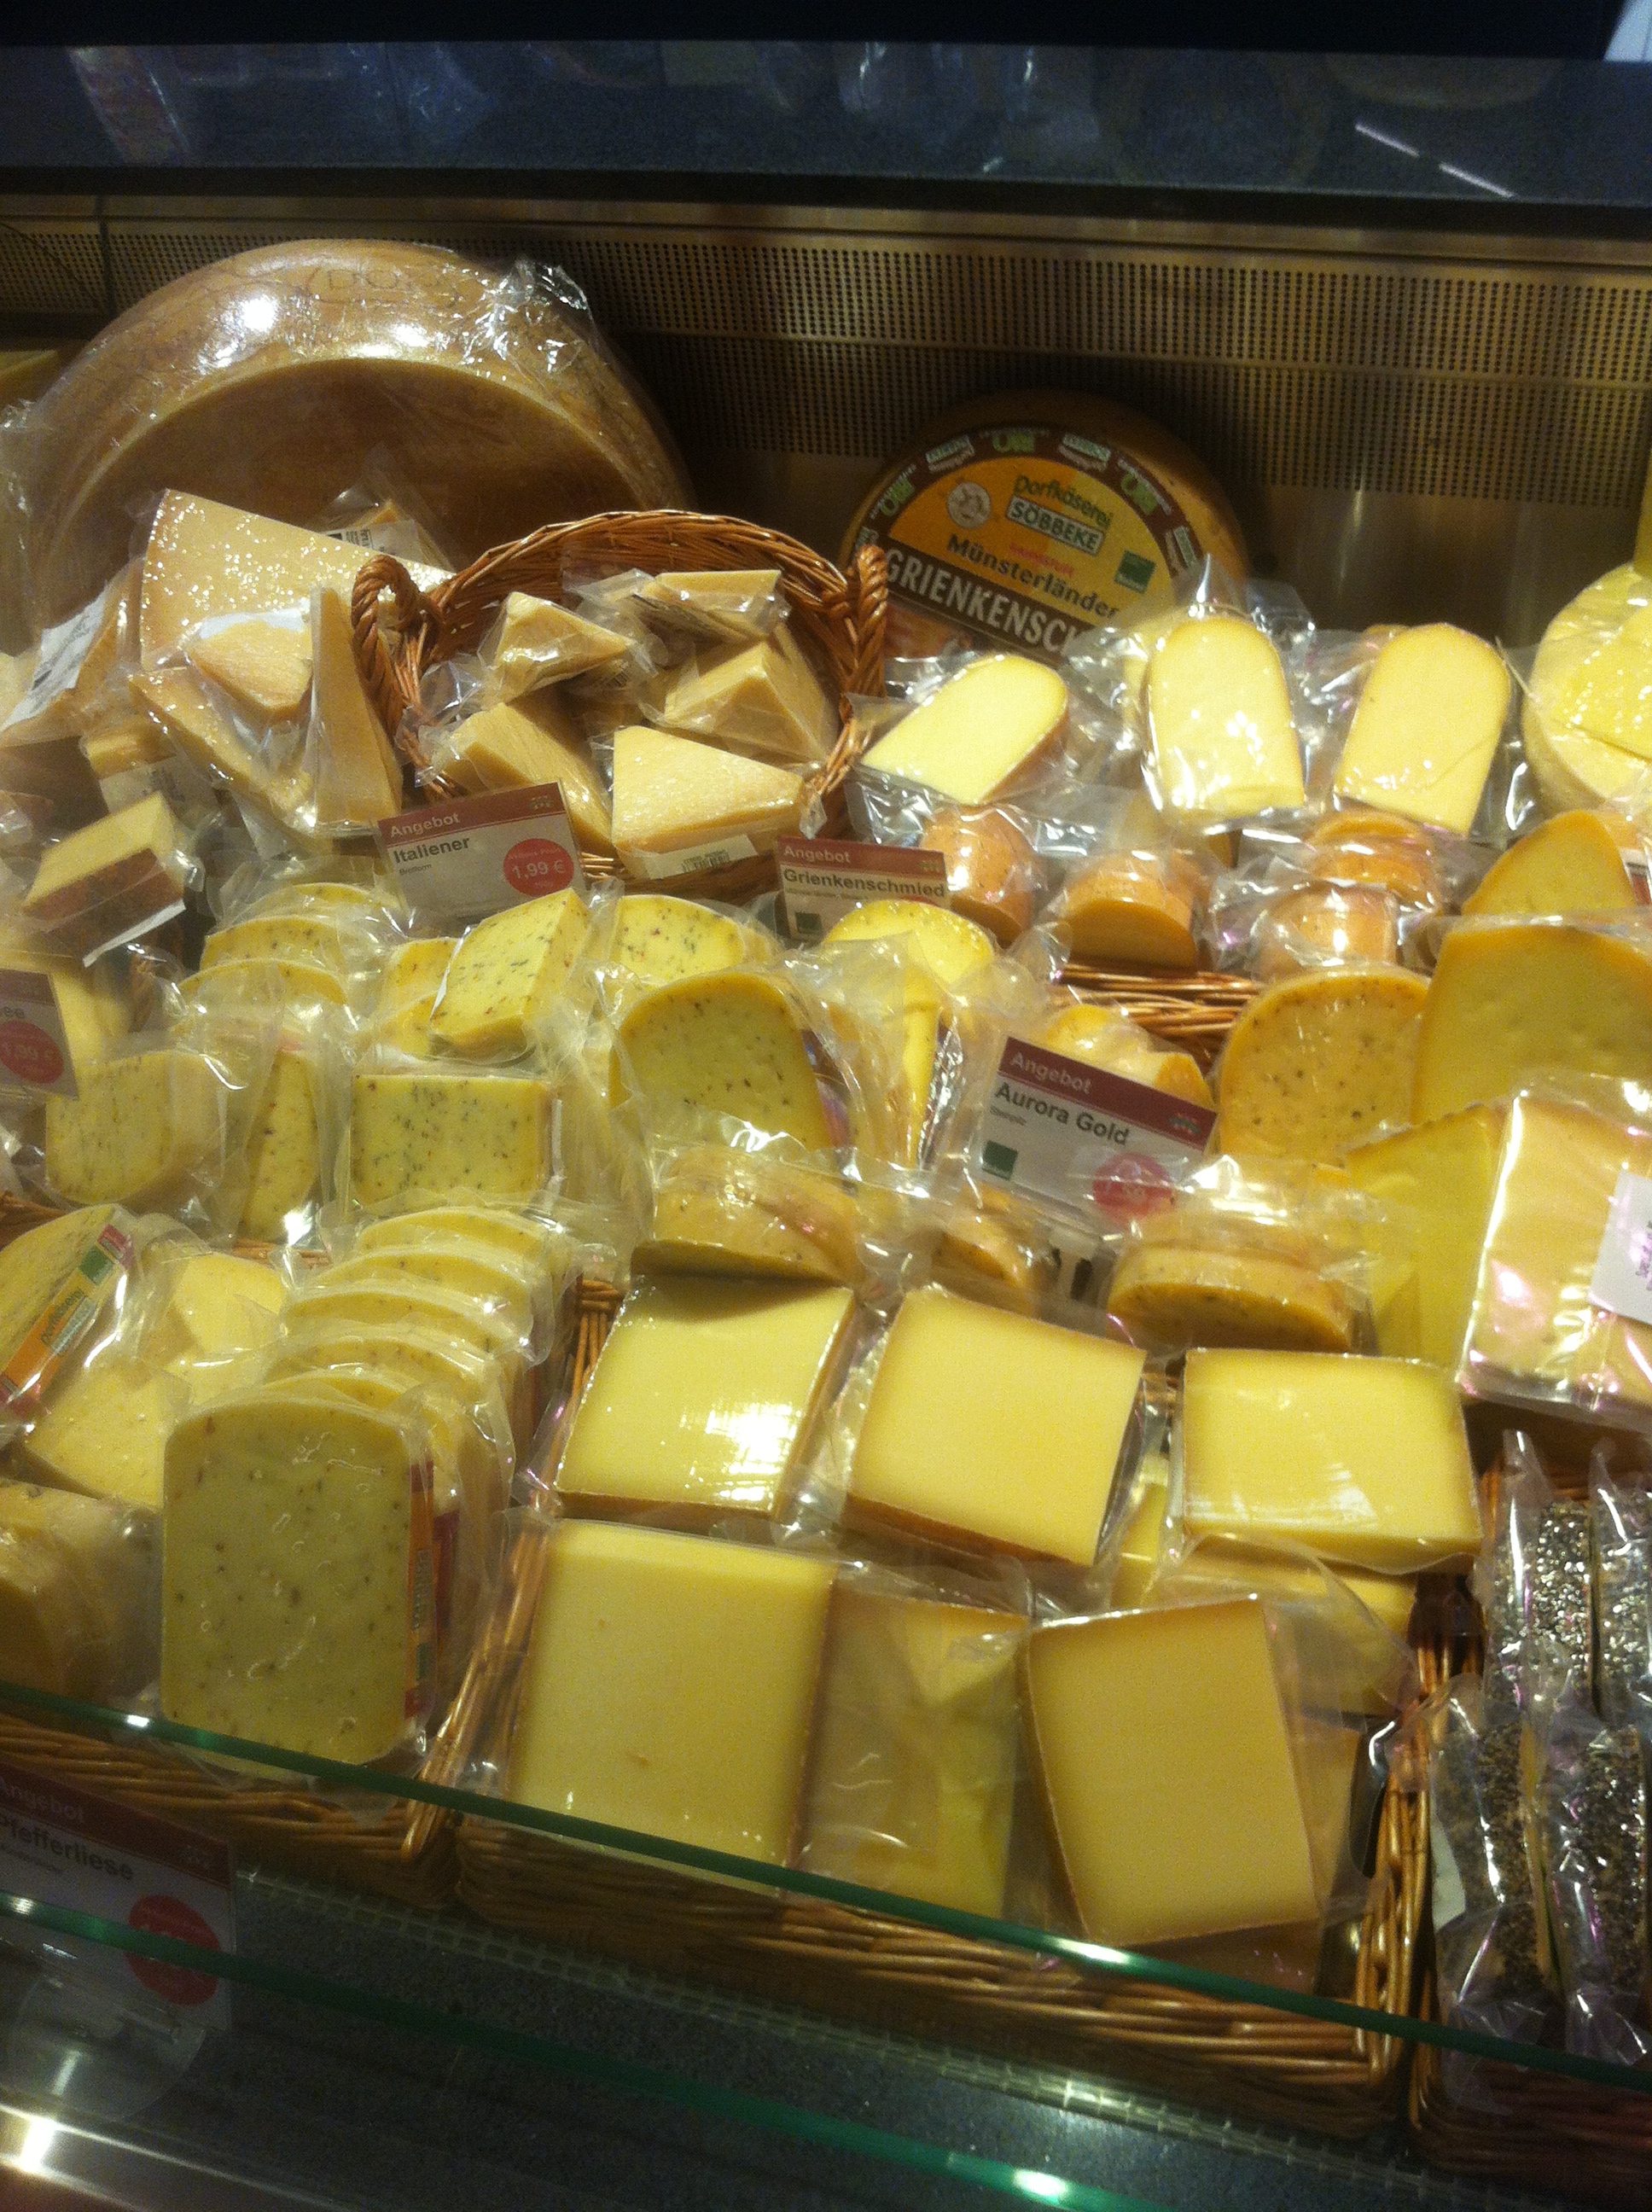 Abgepackter Käse, nur ein Bruchteil der Käsetheke